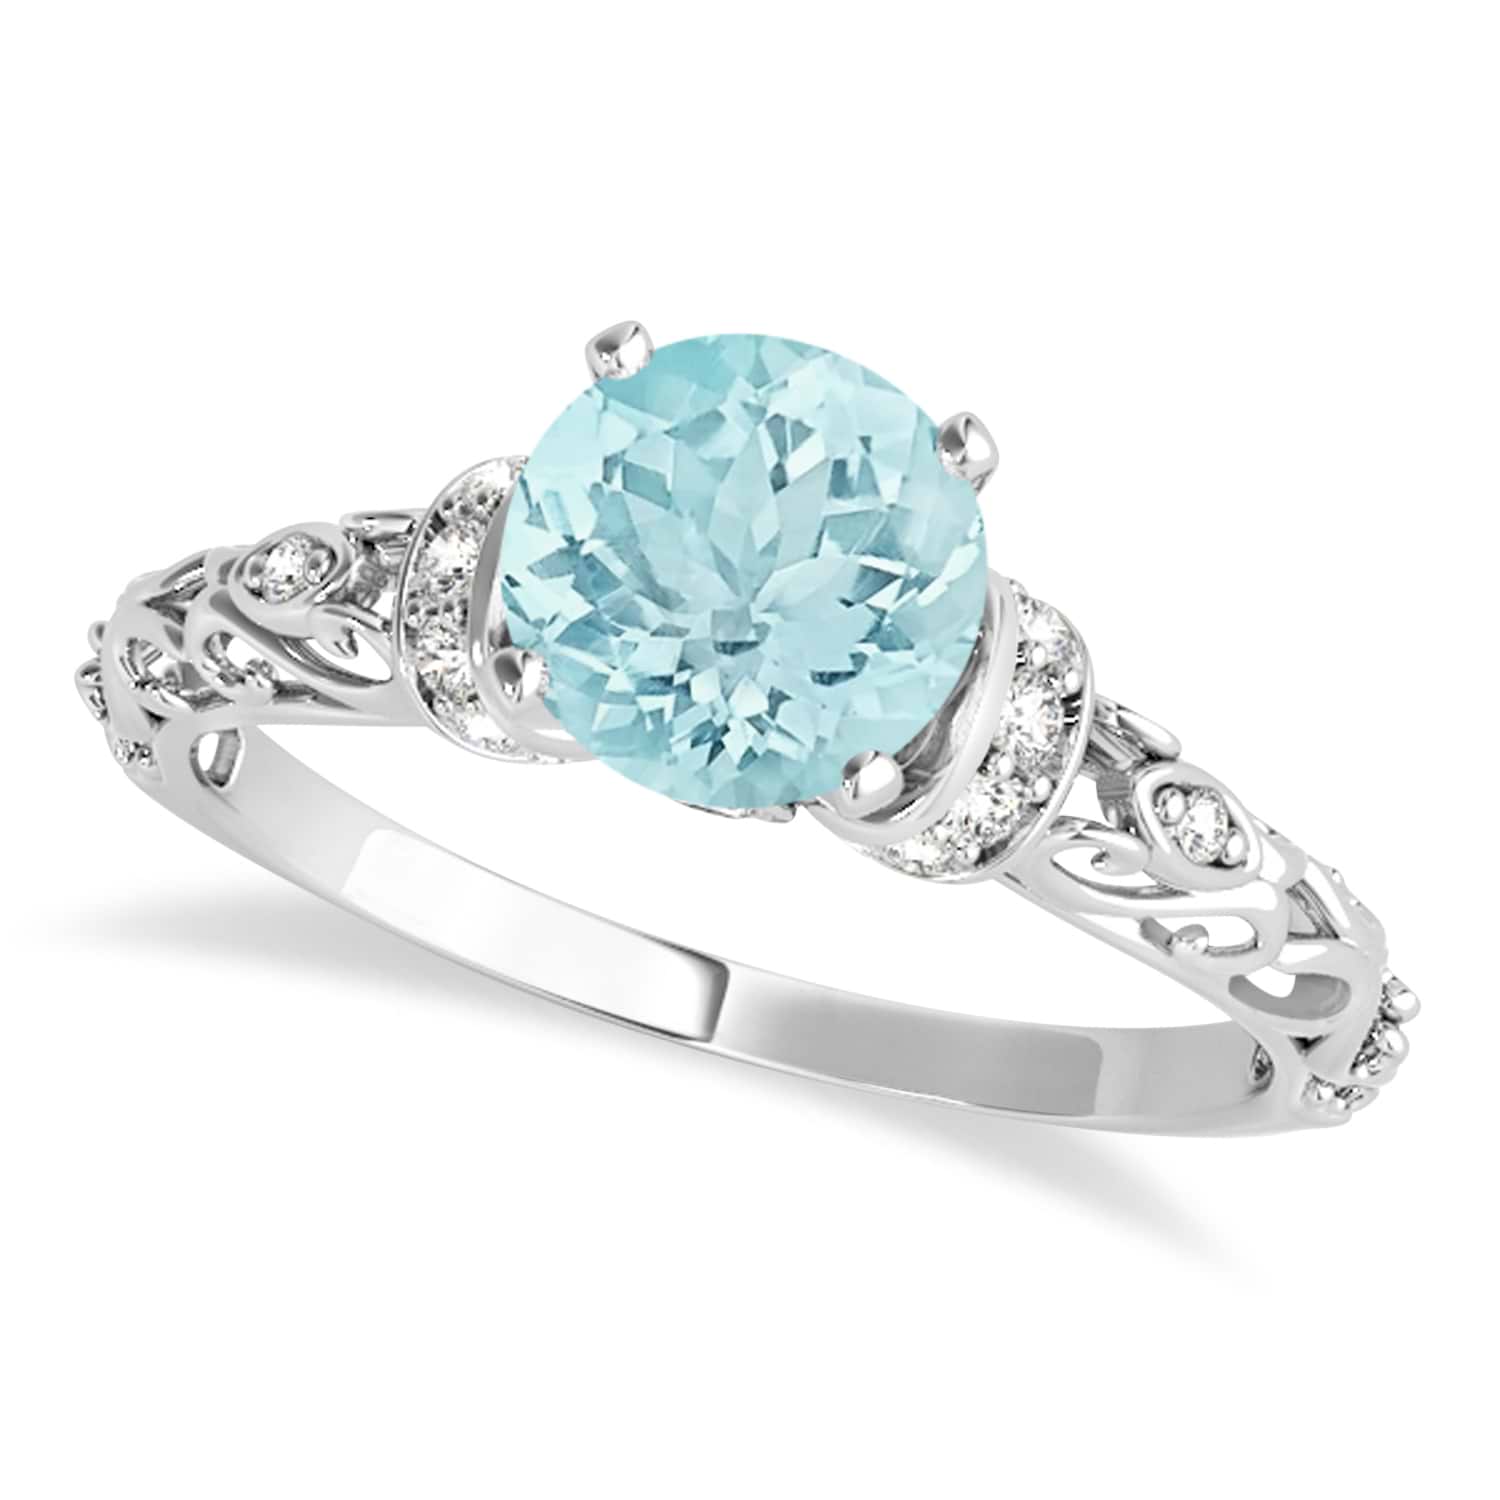 Aquamarine & Diamond Antique Style Engagement Ring 14k White Gold (1.62ct)